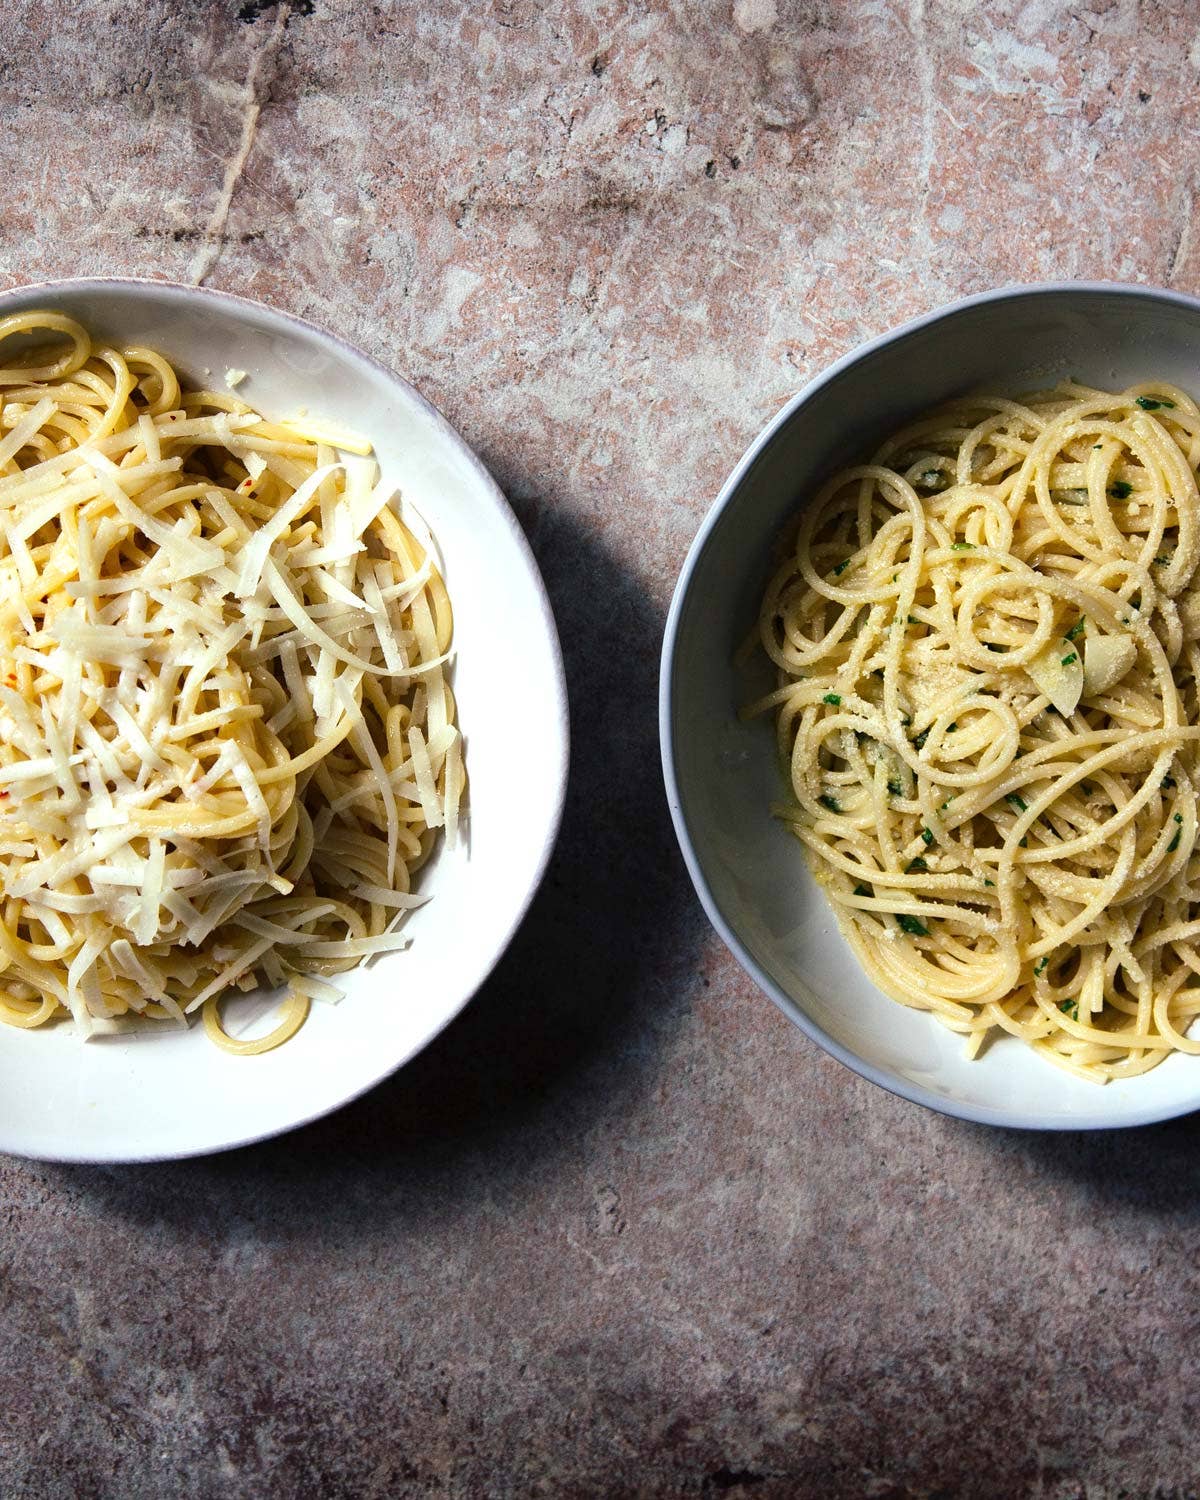 Rita Sodi’s Spaghetti with Garlic and Olive Oil